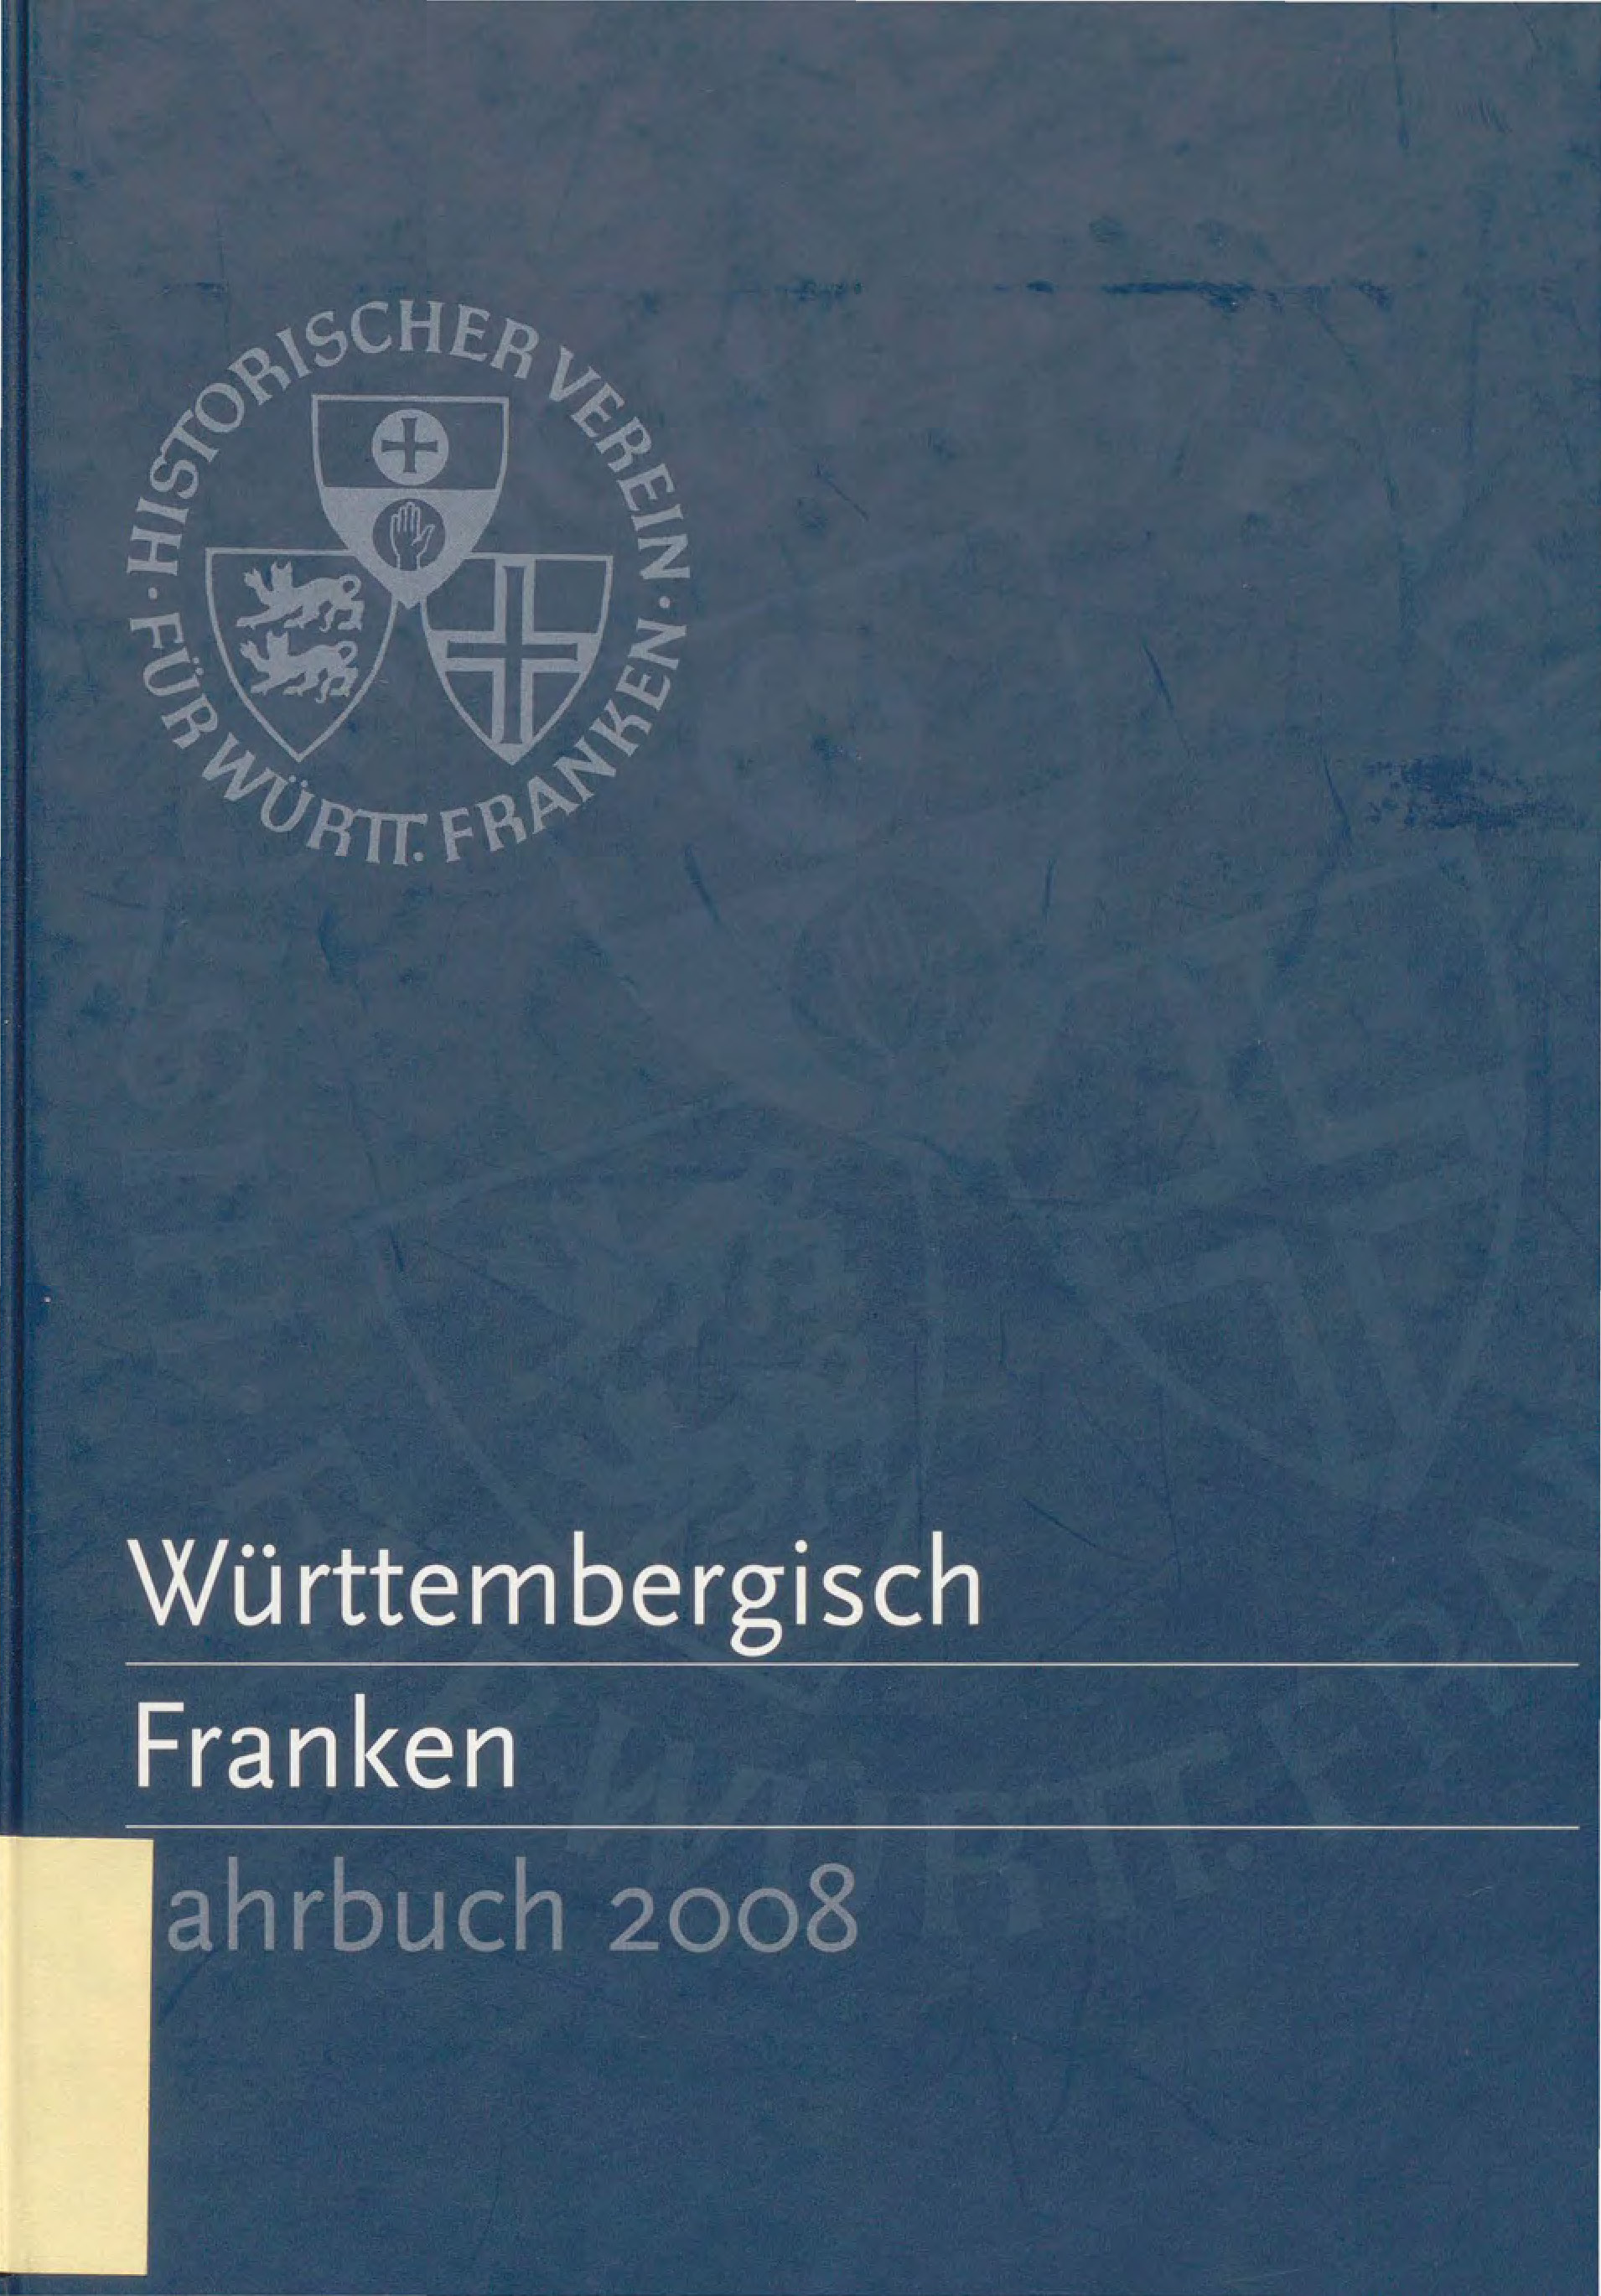                     Ansehen Bd. 92 (2008): Württembergisch Franken
                